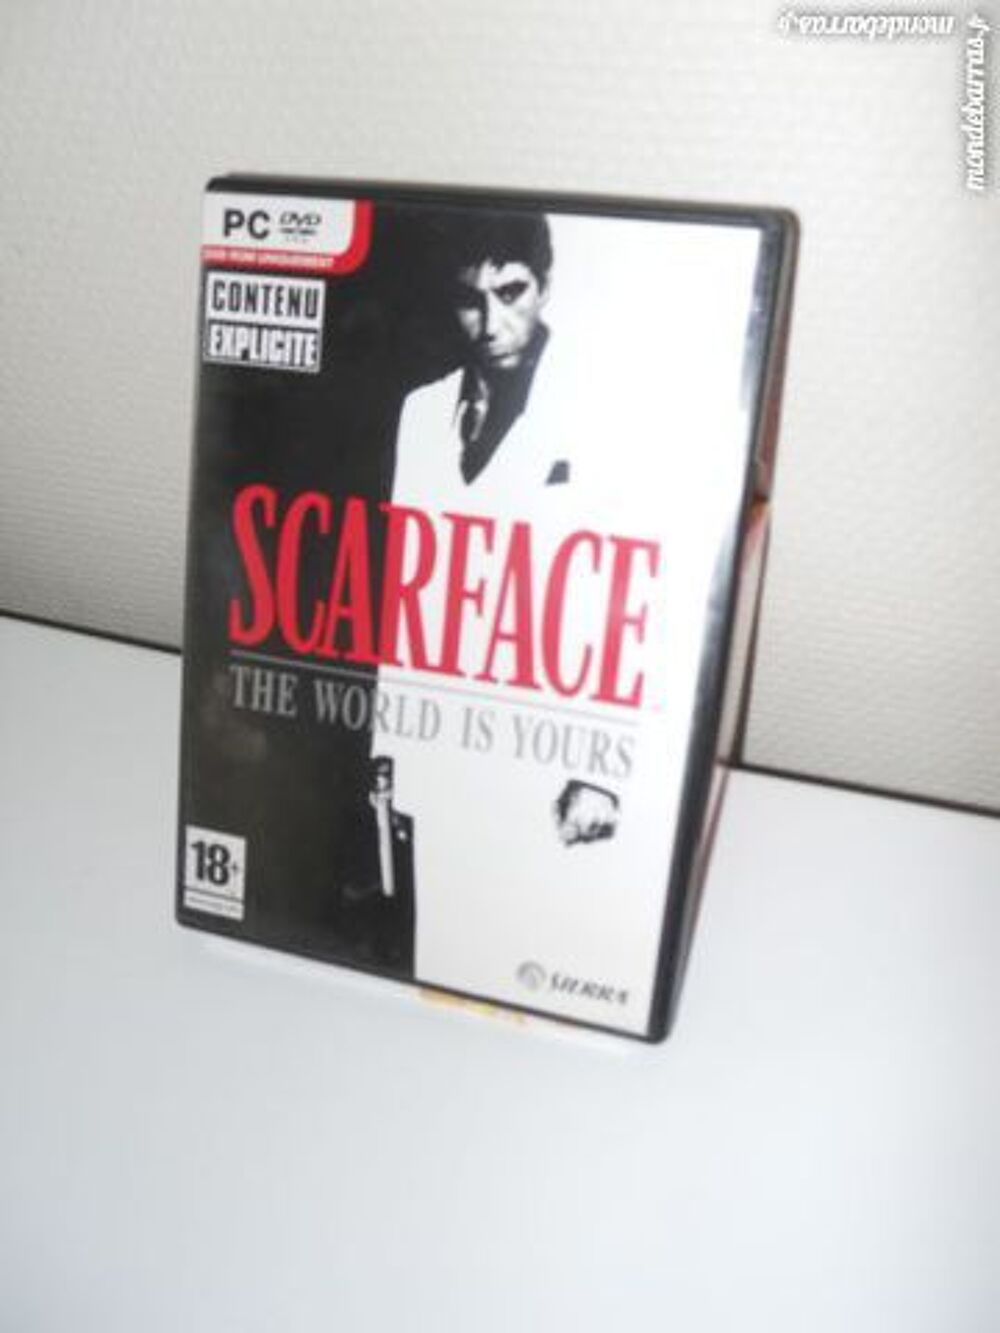 PC DVD Rom uniquement SCARFACE 18 ans et + Matriel informatique